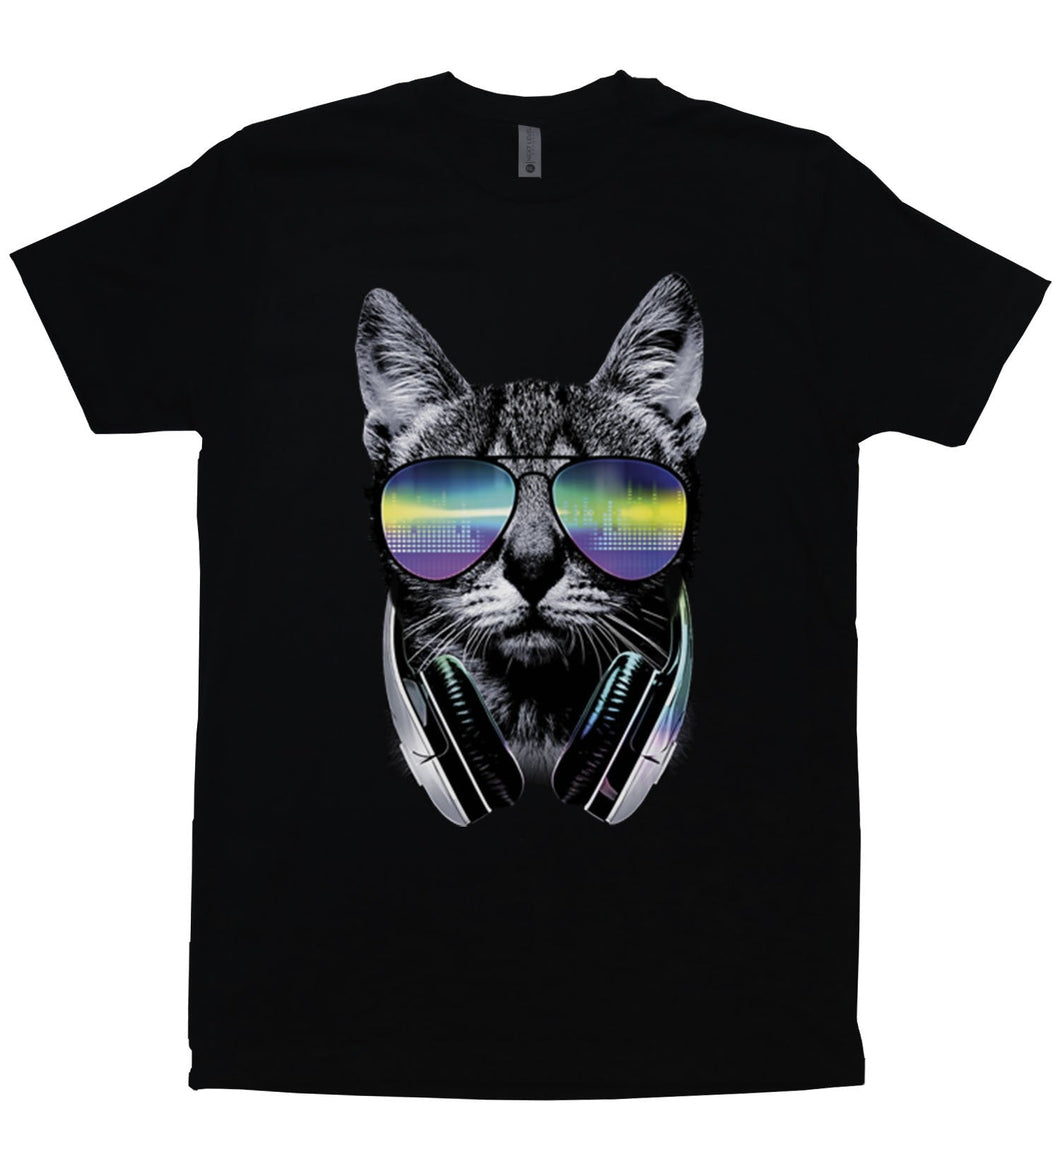 DJ Cat - Unisex T-Shirt - Baffle